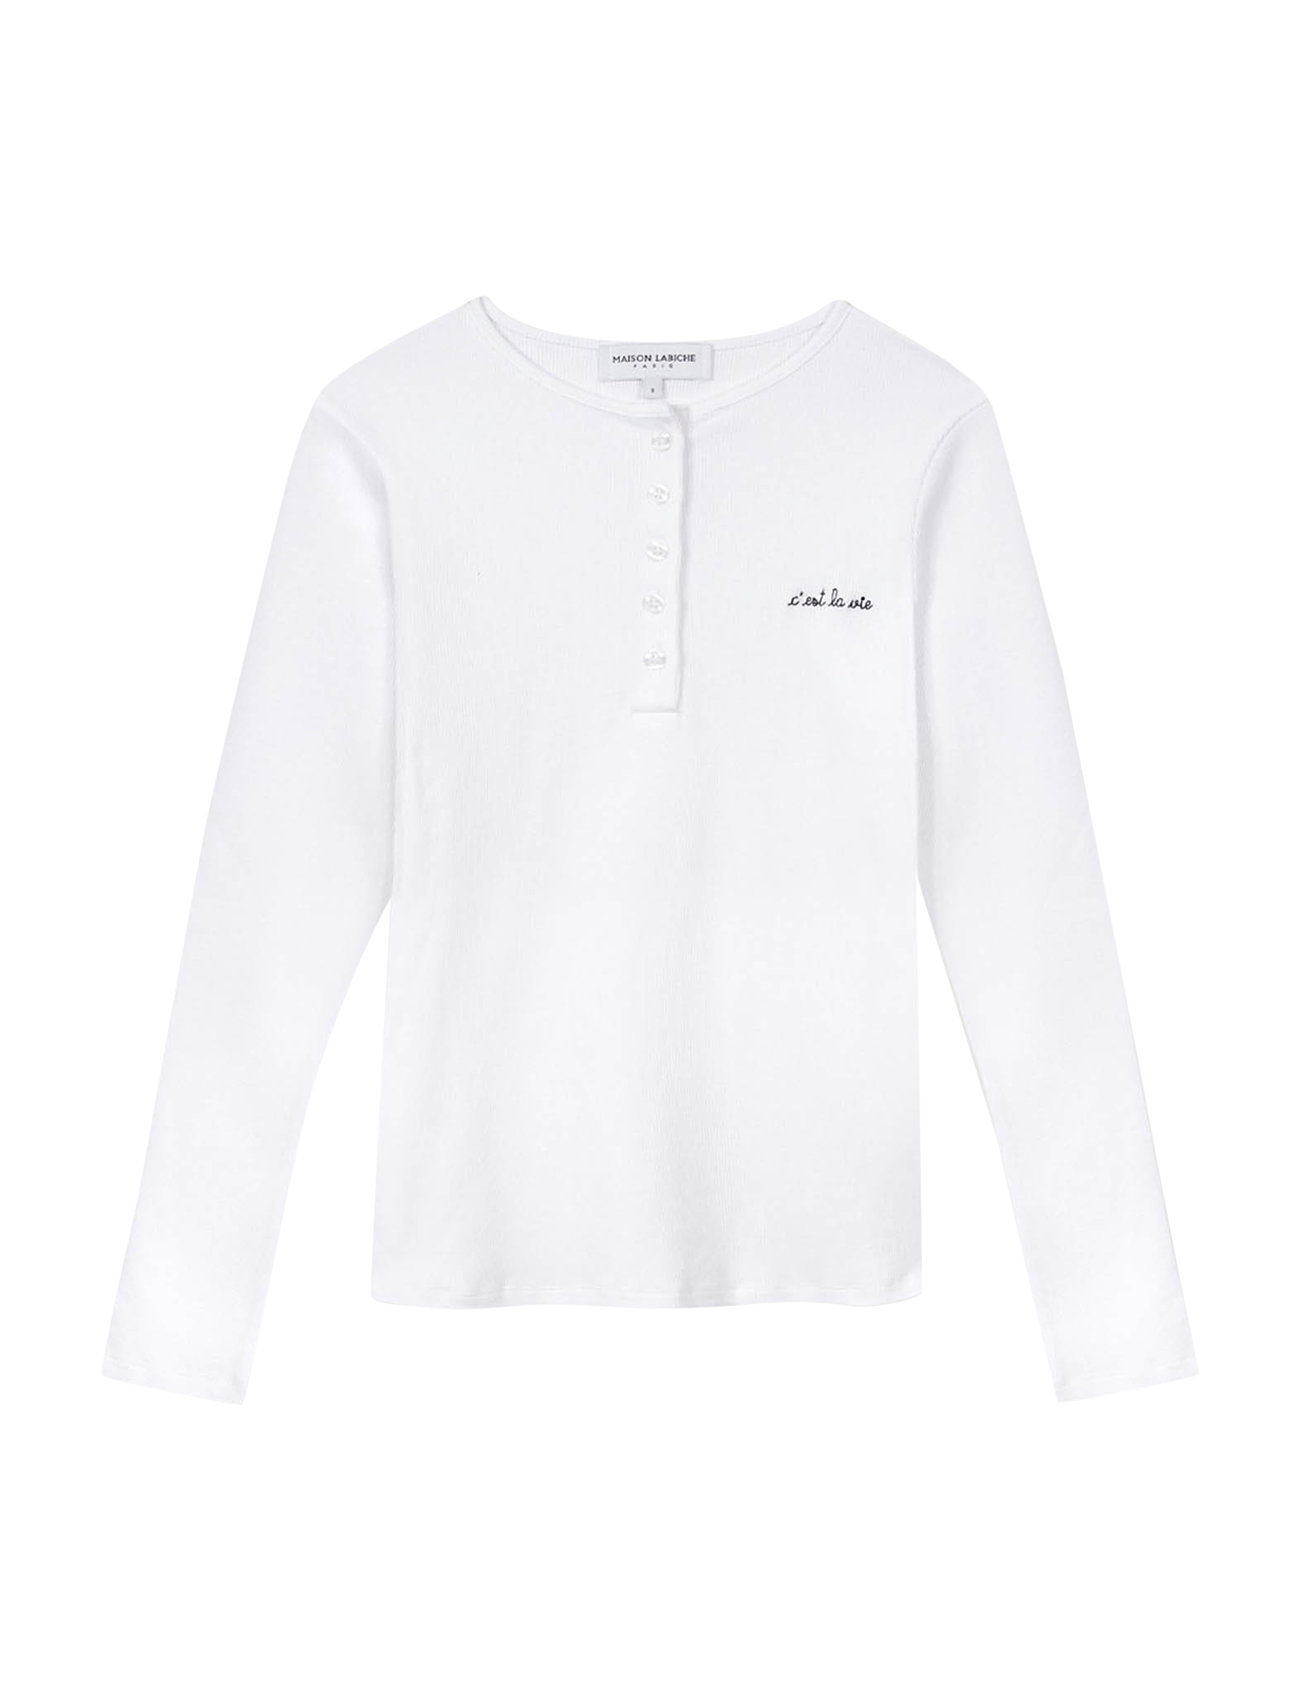 Marette C'est La Vie/Gots Tops T-shirts & Tops Long-sleeved White Maison Labiche Paris